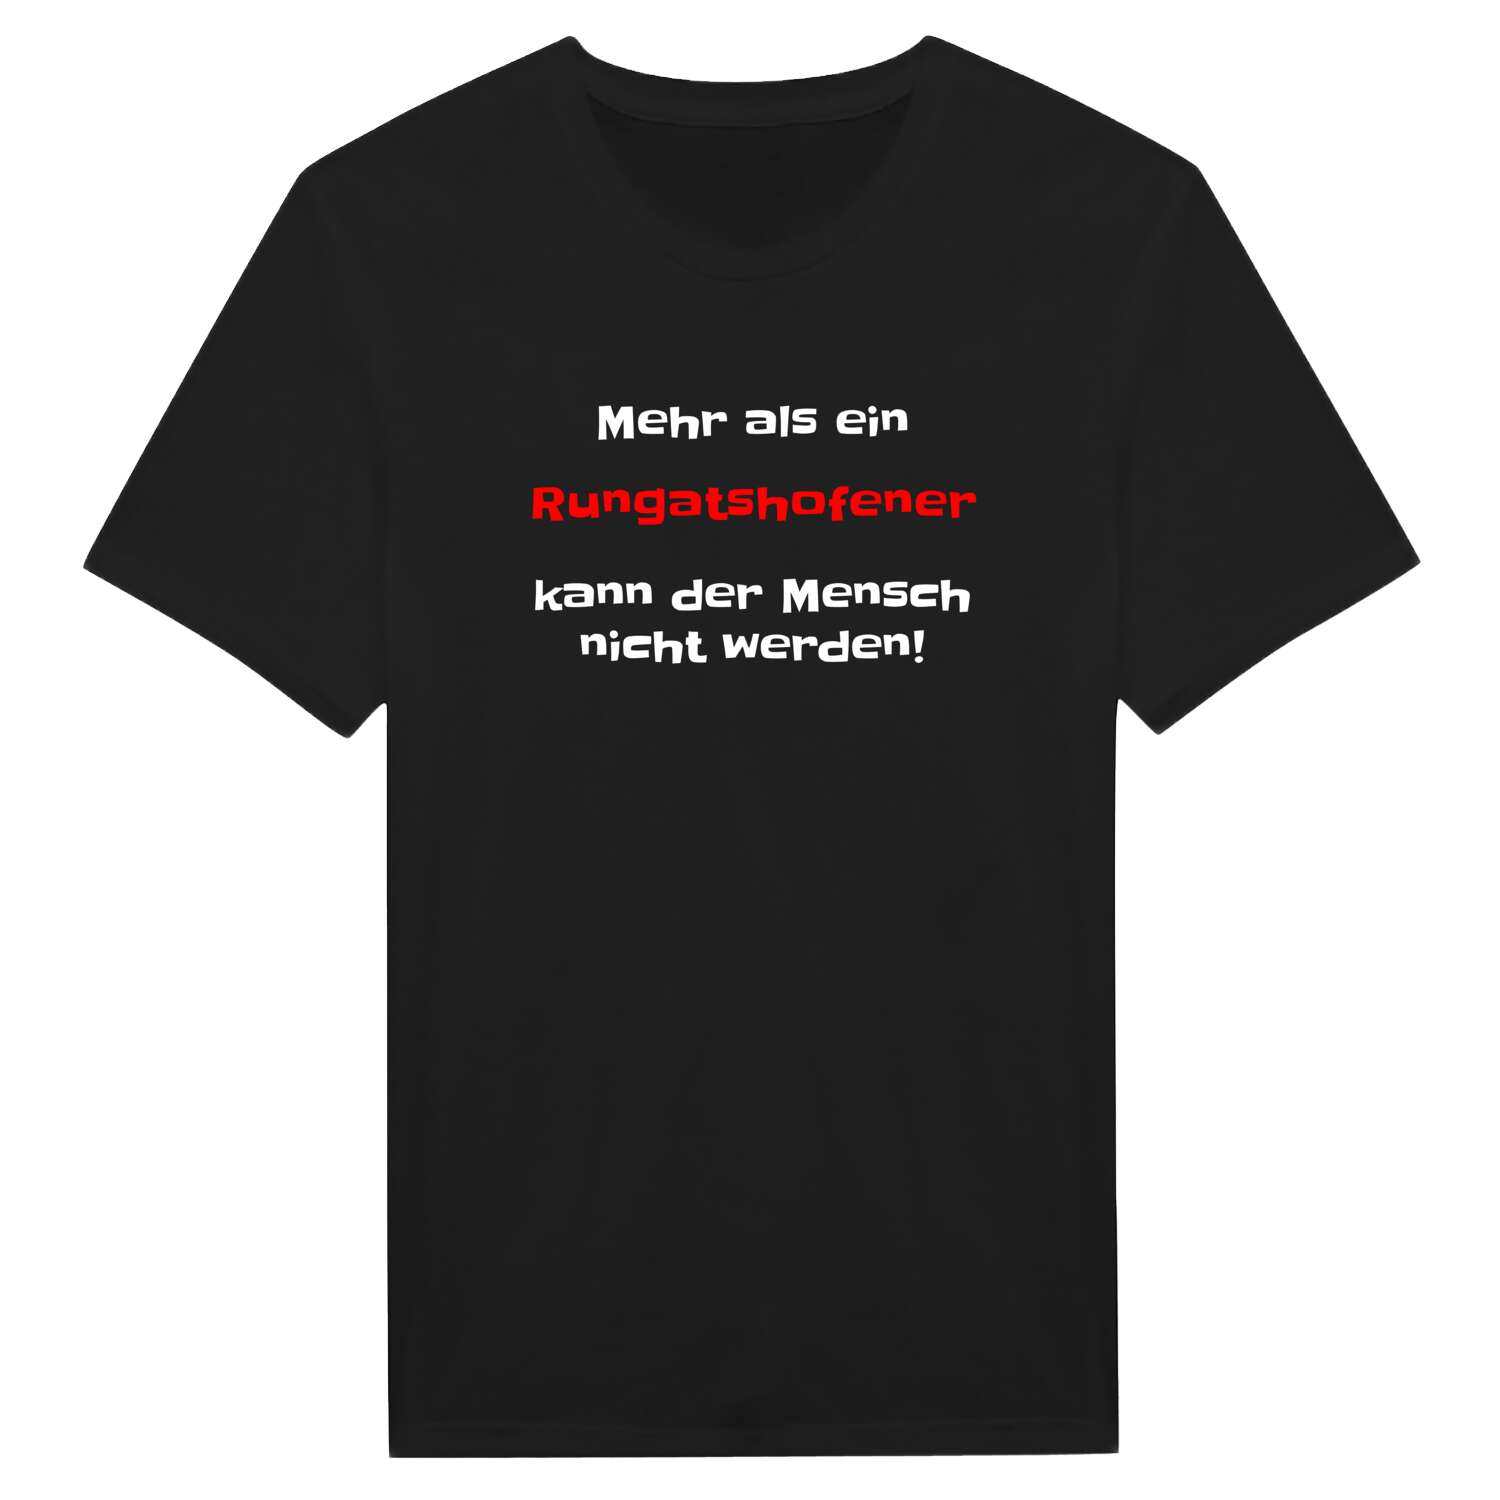 Rungatshofen T-Shirt »Mehr als ein«